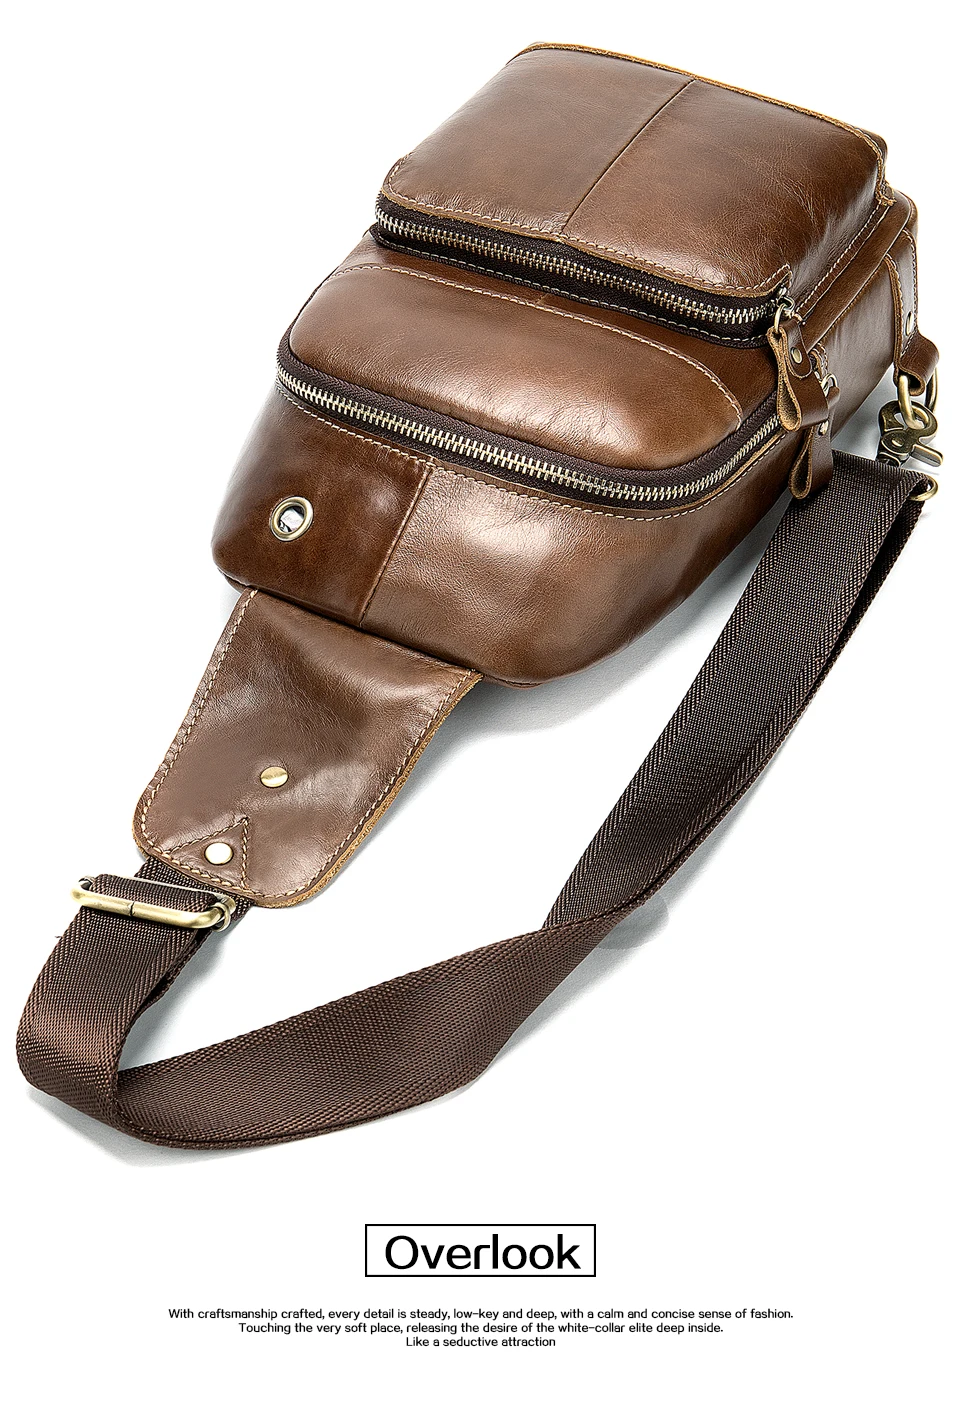 Мужская сумка через плечо WESTAL, натуральная кожа, слинг/нагрудные сумки, повседневные сумки через плечо для мужчин, сумка через плечо, зарядка через USB, нагрудная сумка 8575